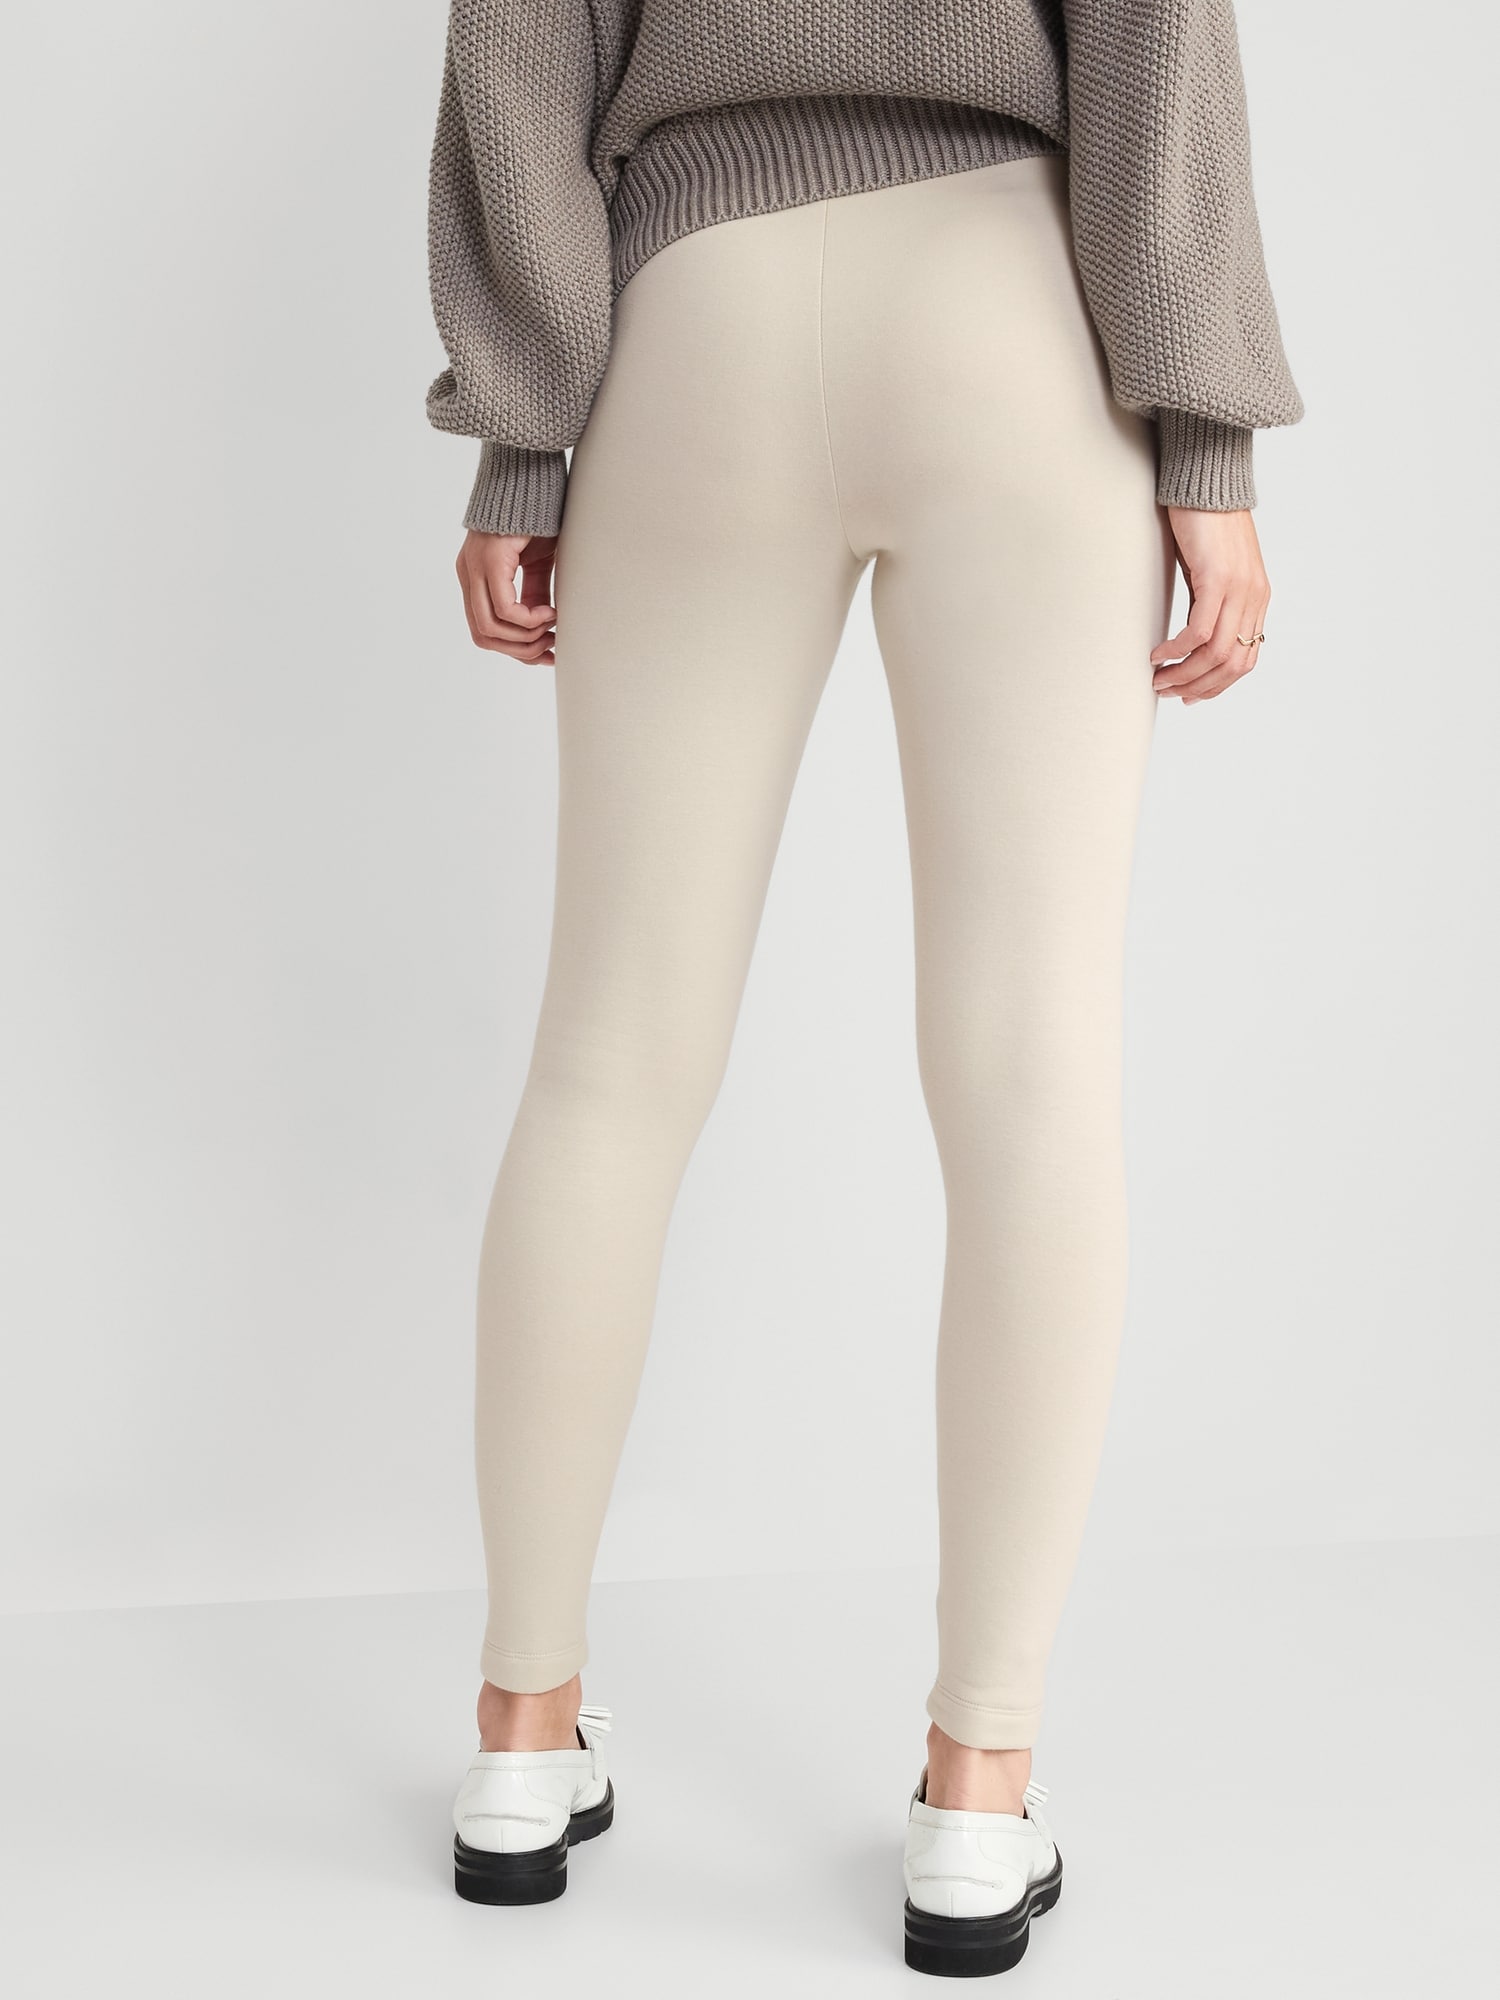 Kuda Moda 5-Pack Fleece Lined Leggings for Women Winter Legging Warm  Thermal Full Length Pants - Walmart.com